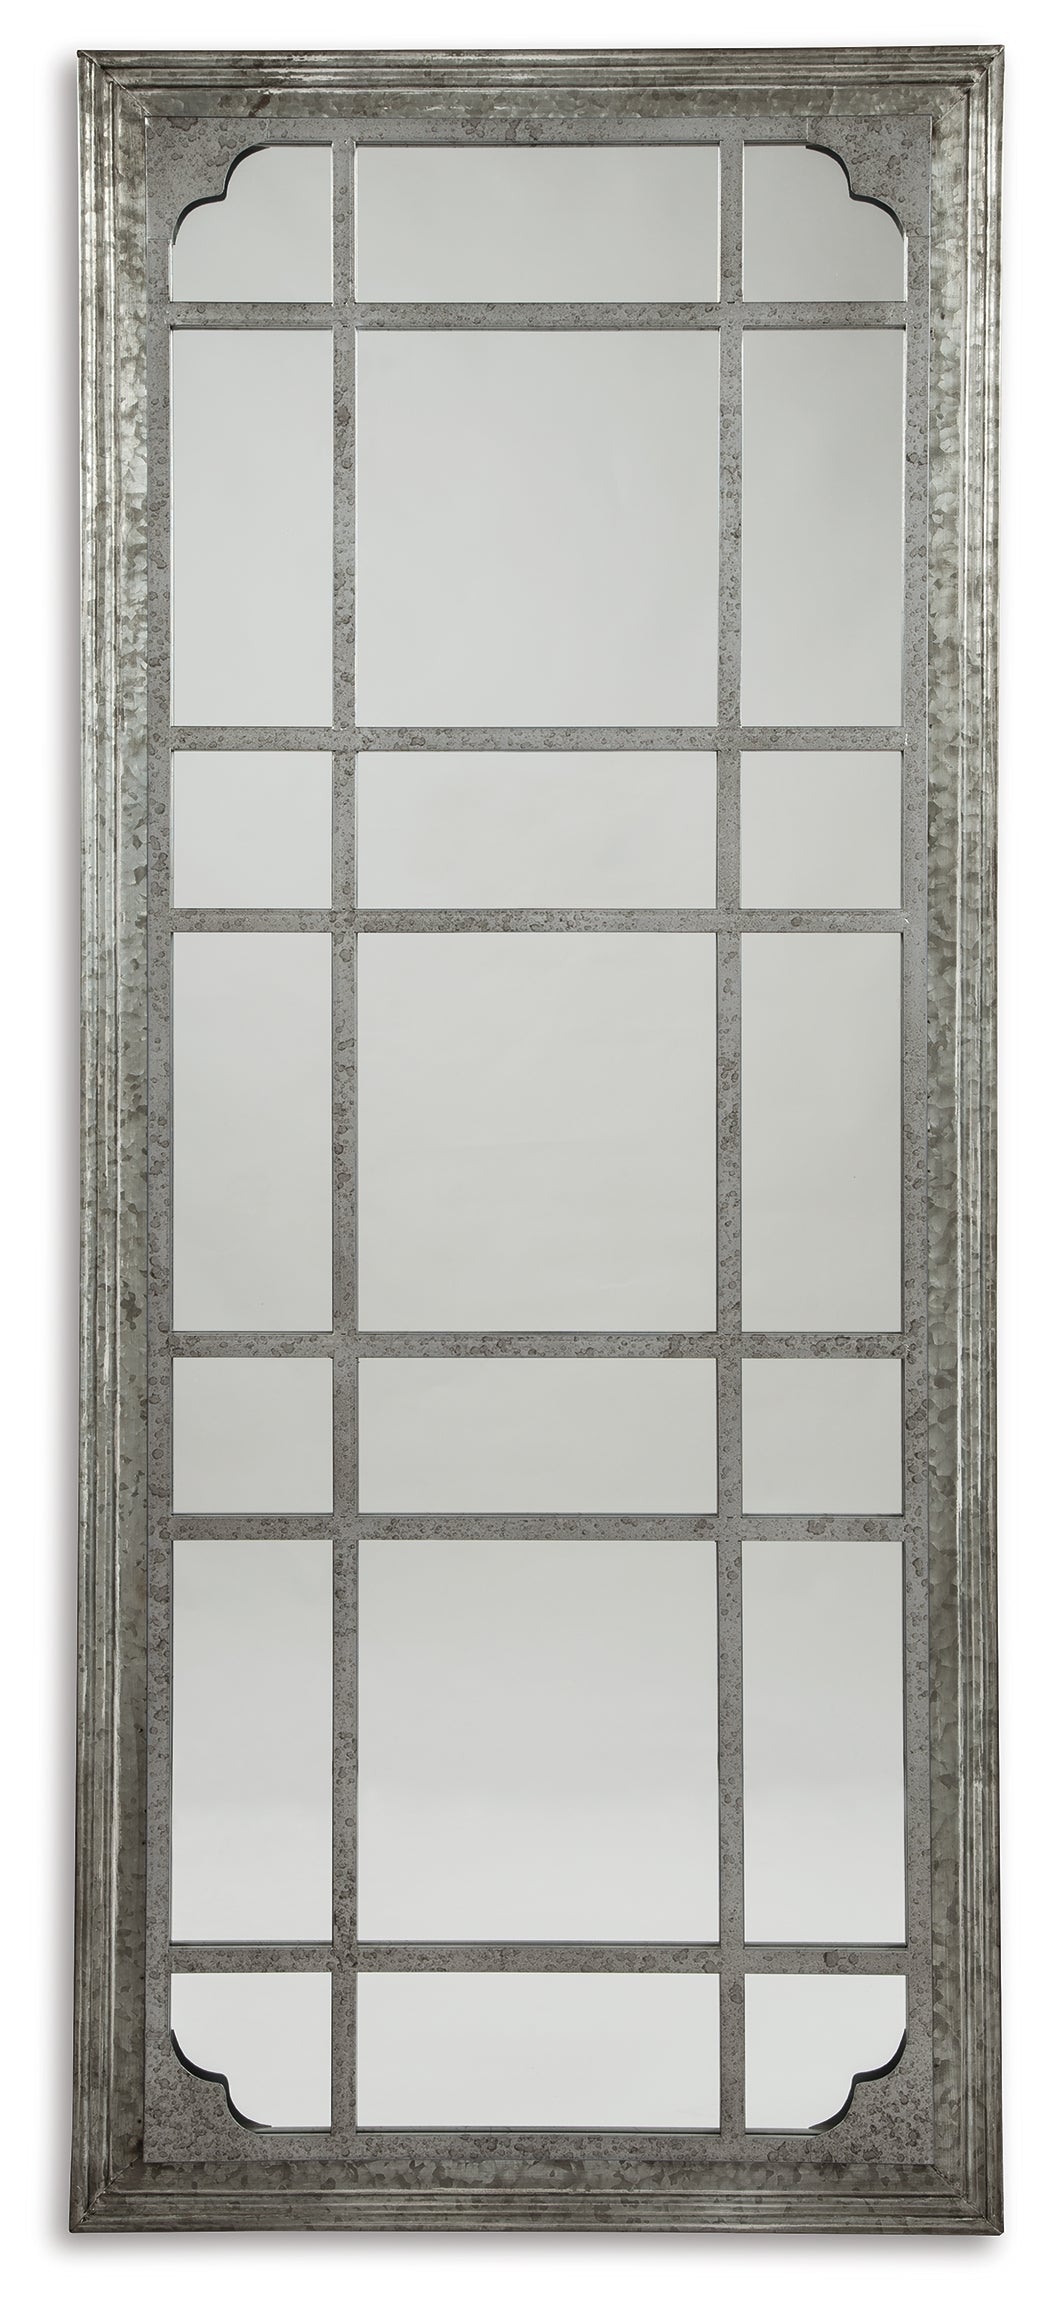 Remy Antique Gray Floor Mirror